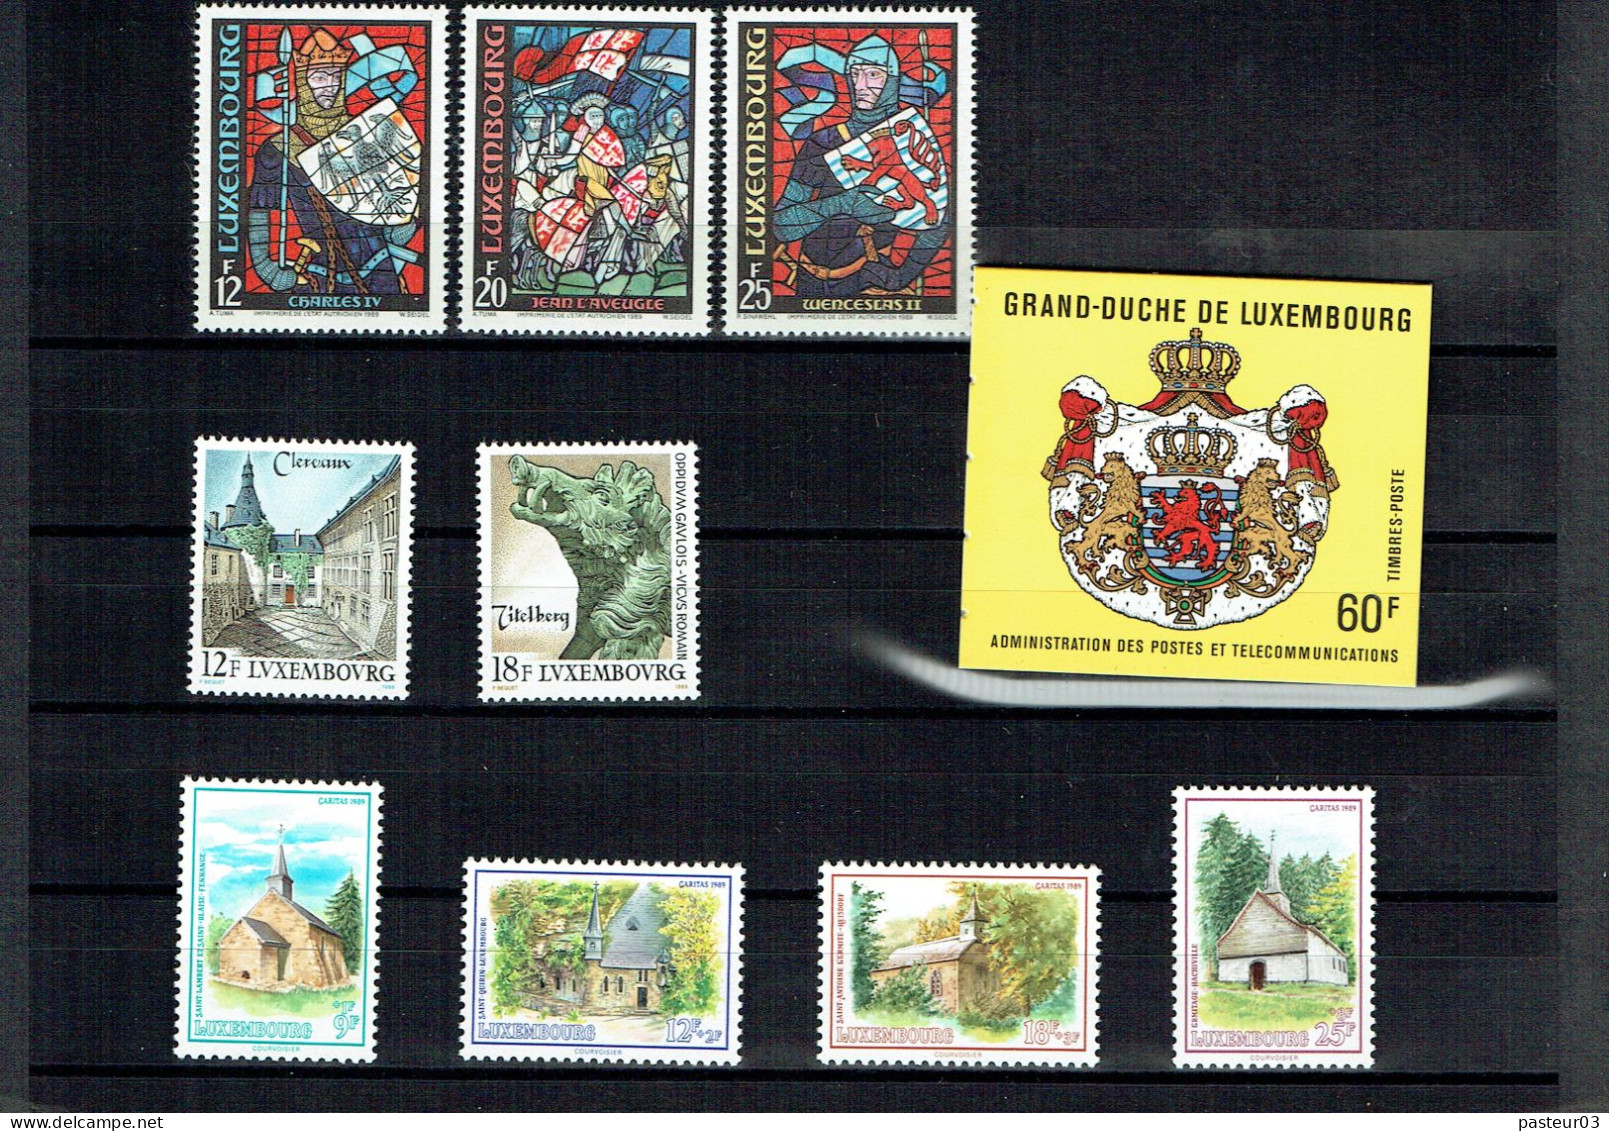 Luxembourg Joli Lot De 1989 à 1993 Présenté Dans Emballage Cartonné P & T Luxembourg Publicité Juvalux 1998 - Collections